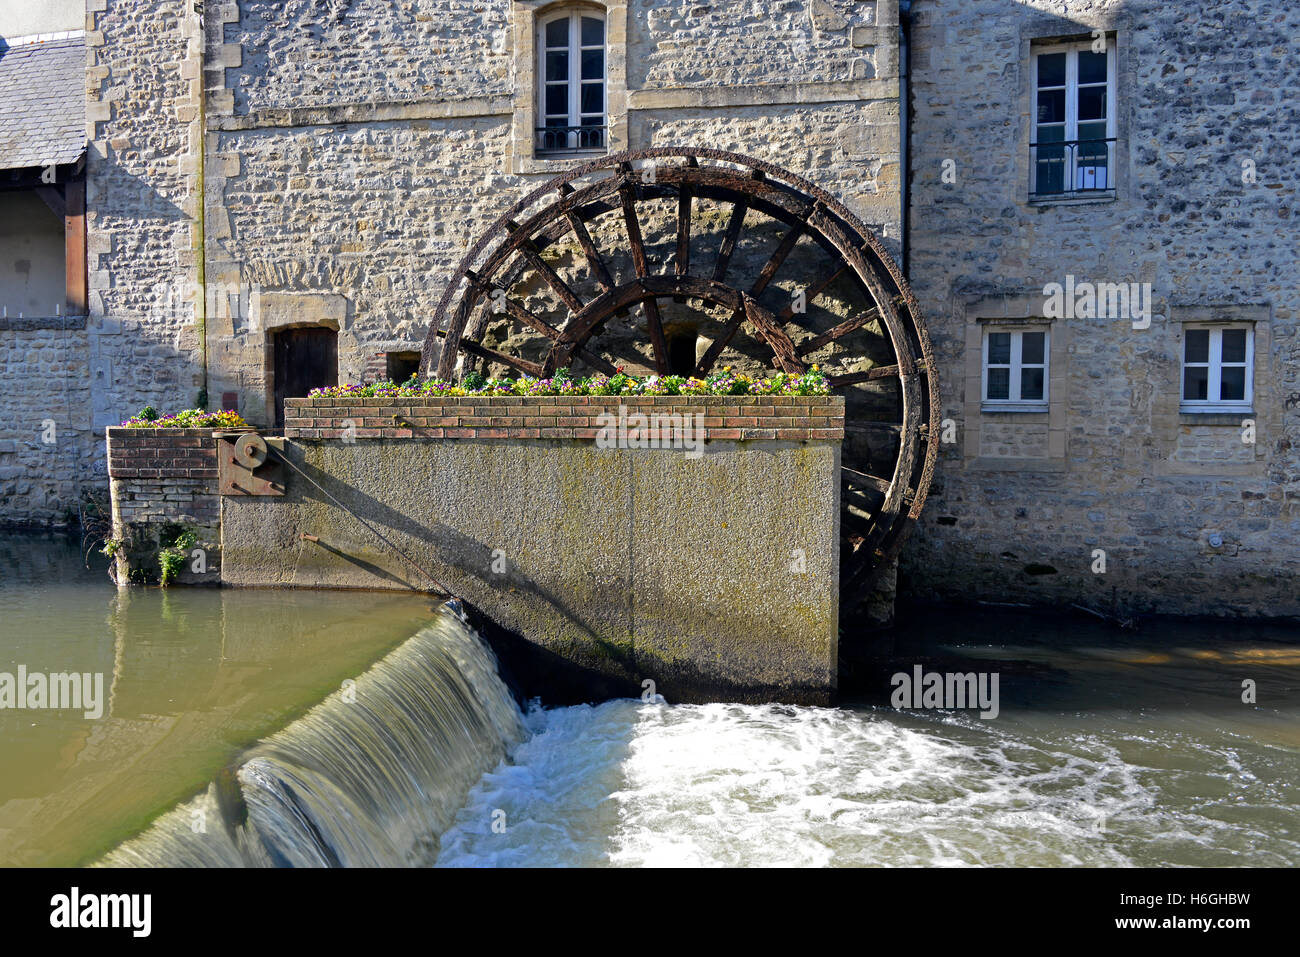 Wasserrad am Fluss Aure in Bayeux, eine Gemeinde im Département Calvados in der Normandie im Nordwesten Frankreichs Stockfoto